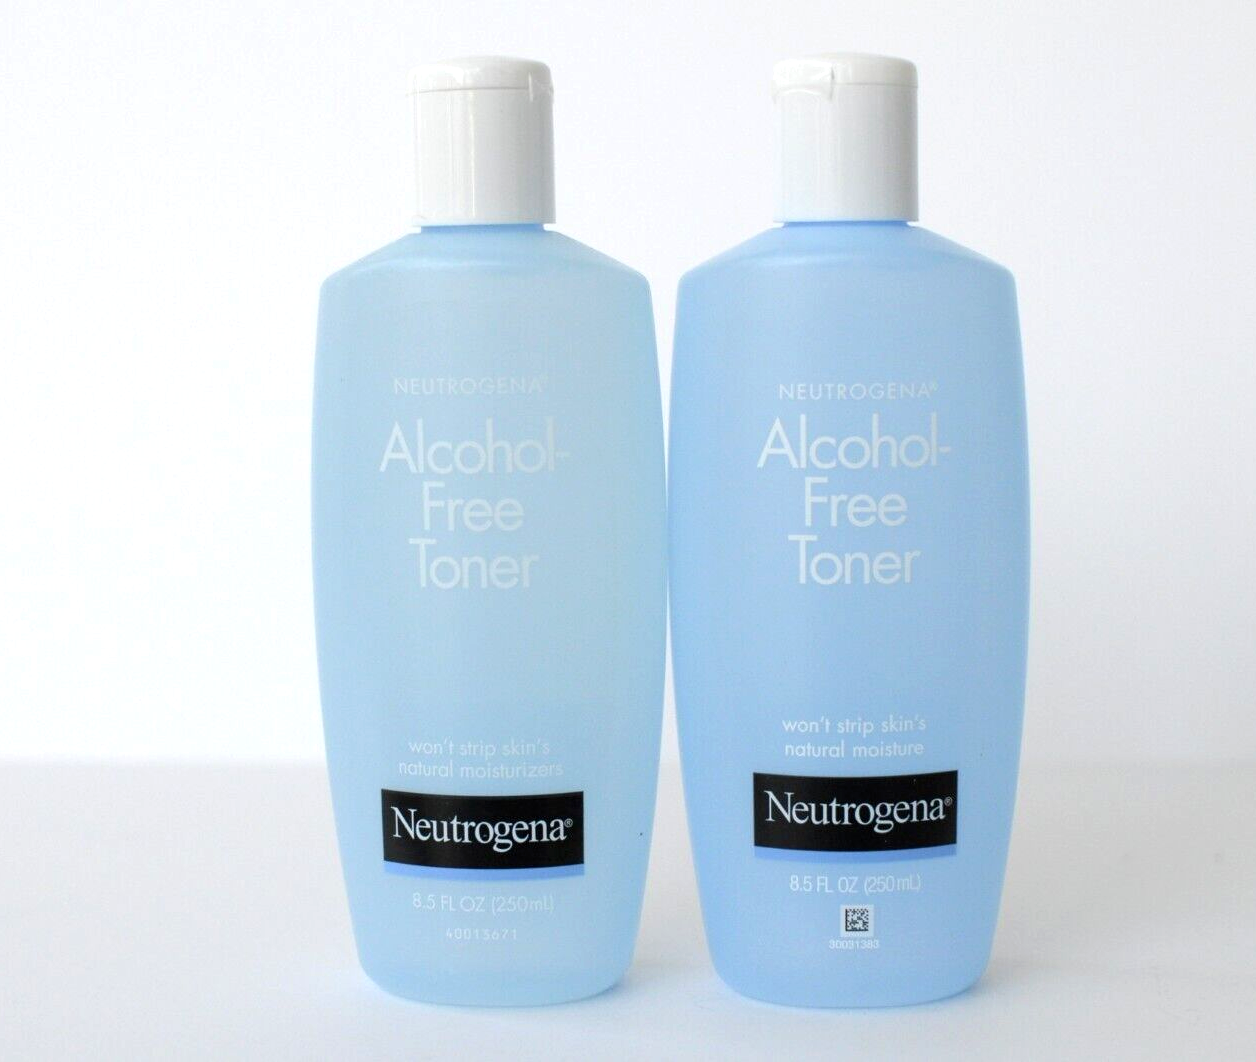 Neutrogena Alcohol Free Facial Toner 8.5oz Lot of 2 Blue Bottle Original Formula - $46.00